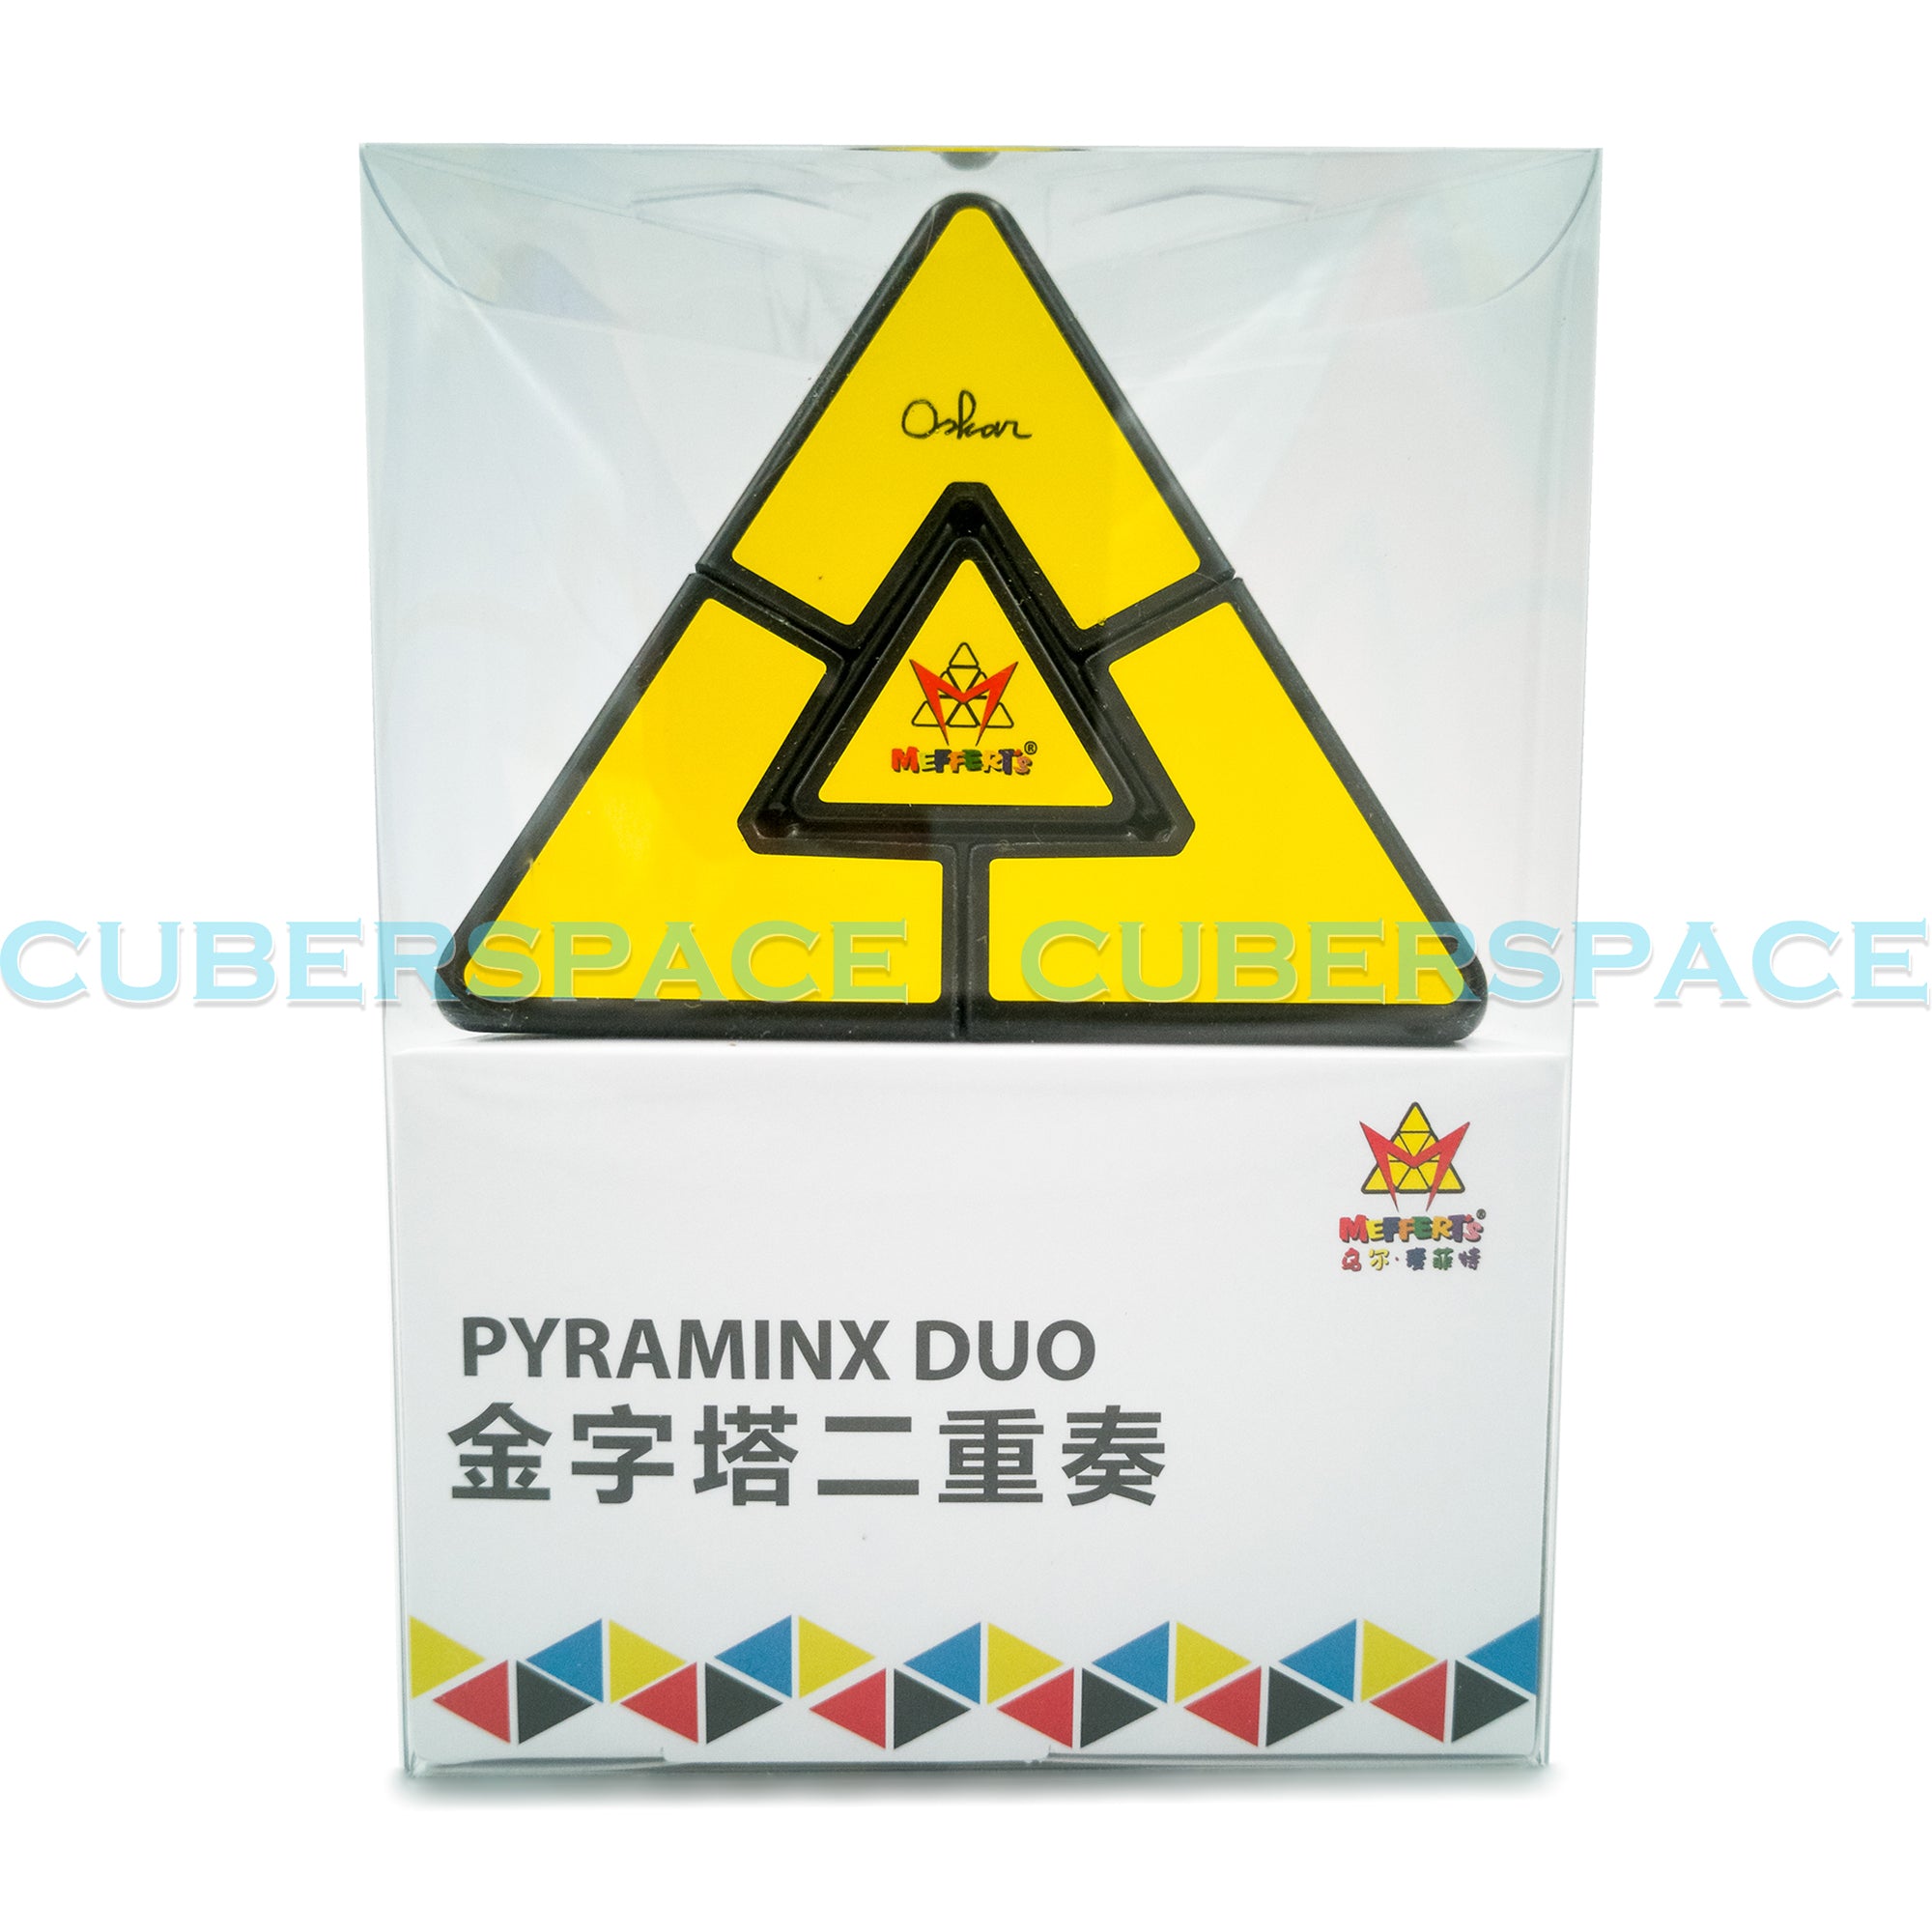 MoYu Meffert's Pyraminx Duo - CuberSpace